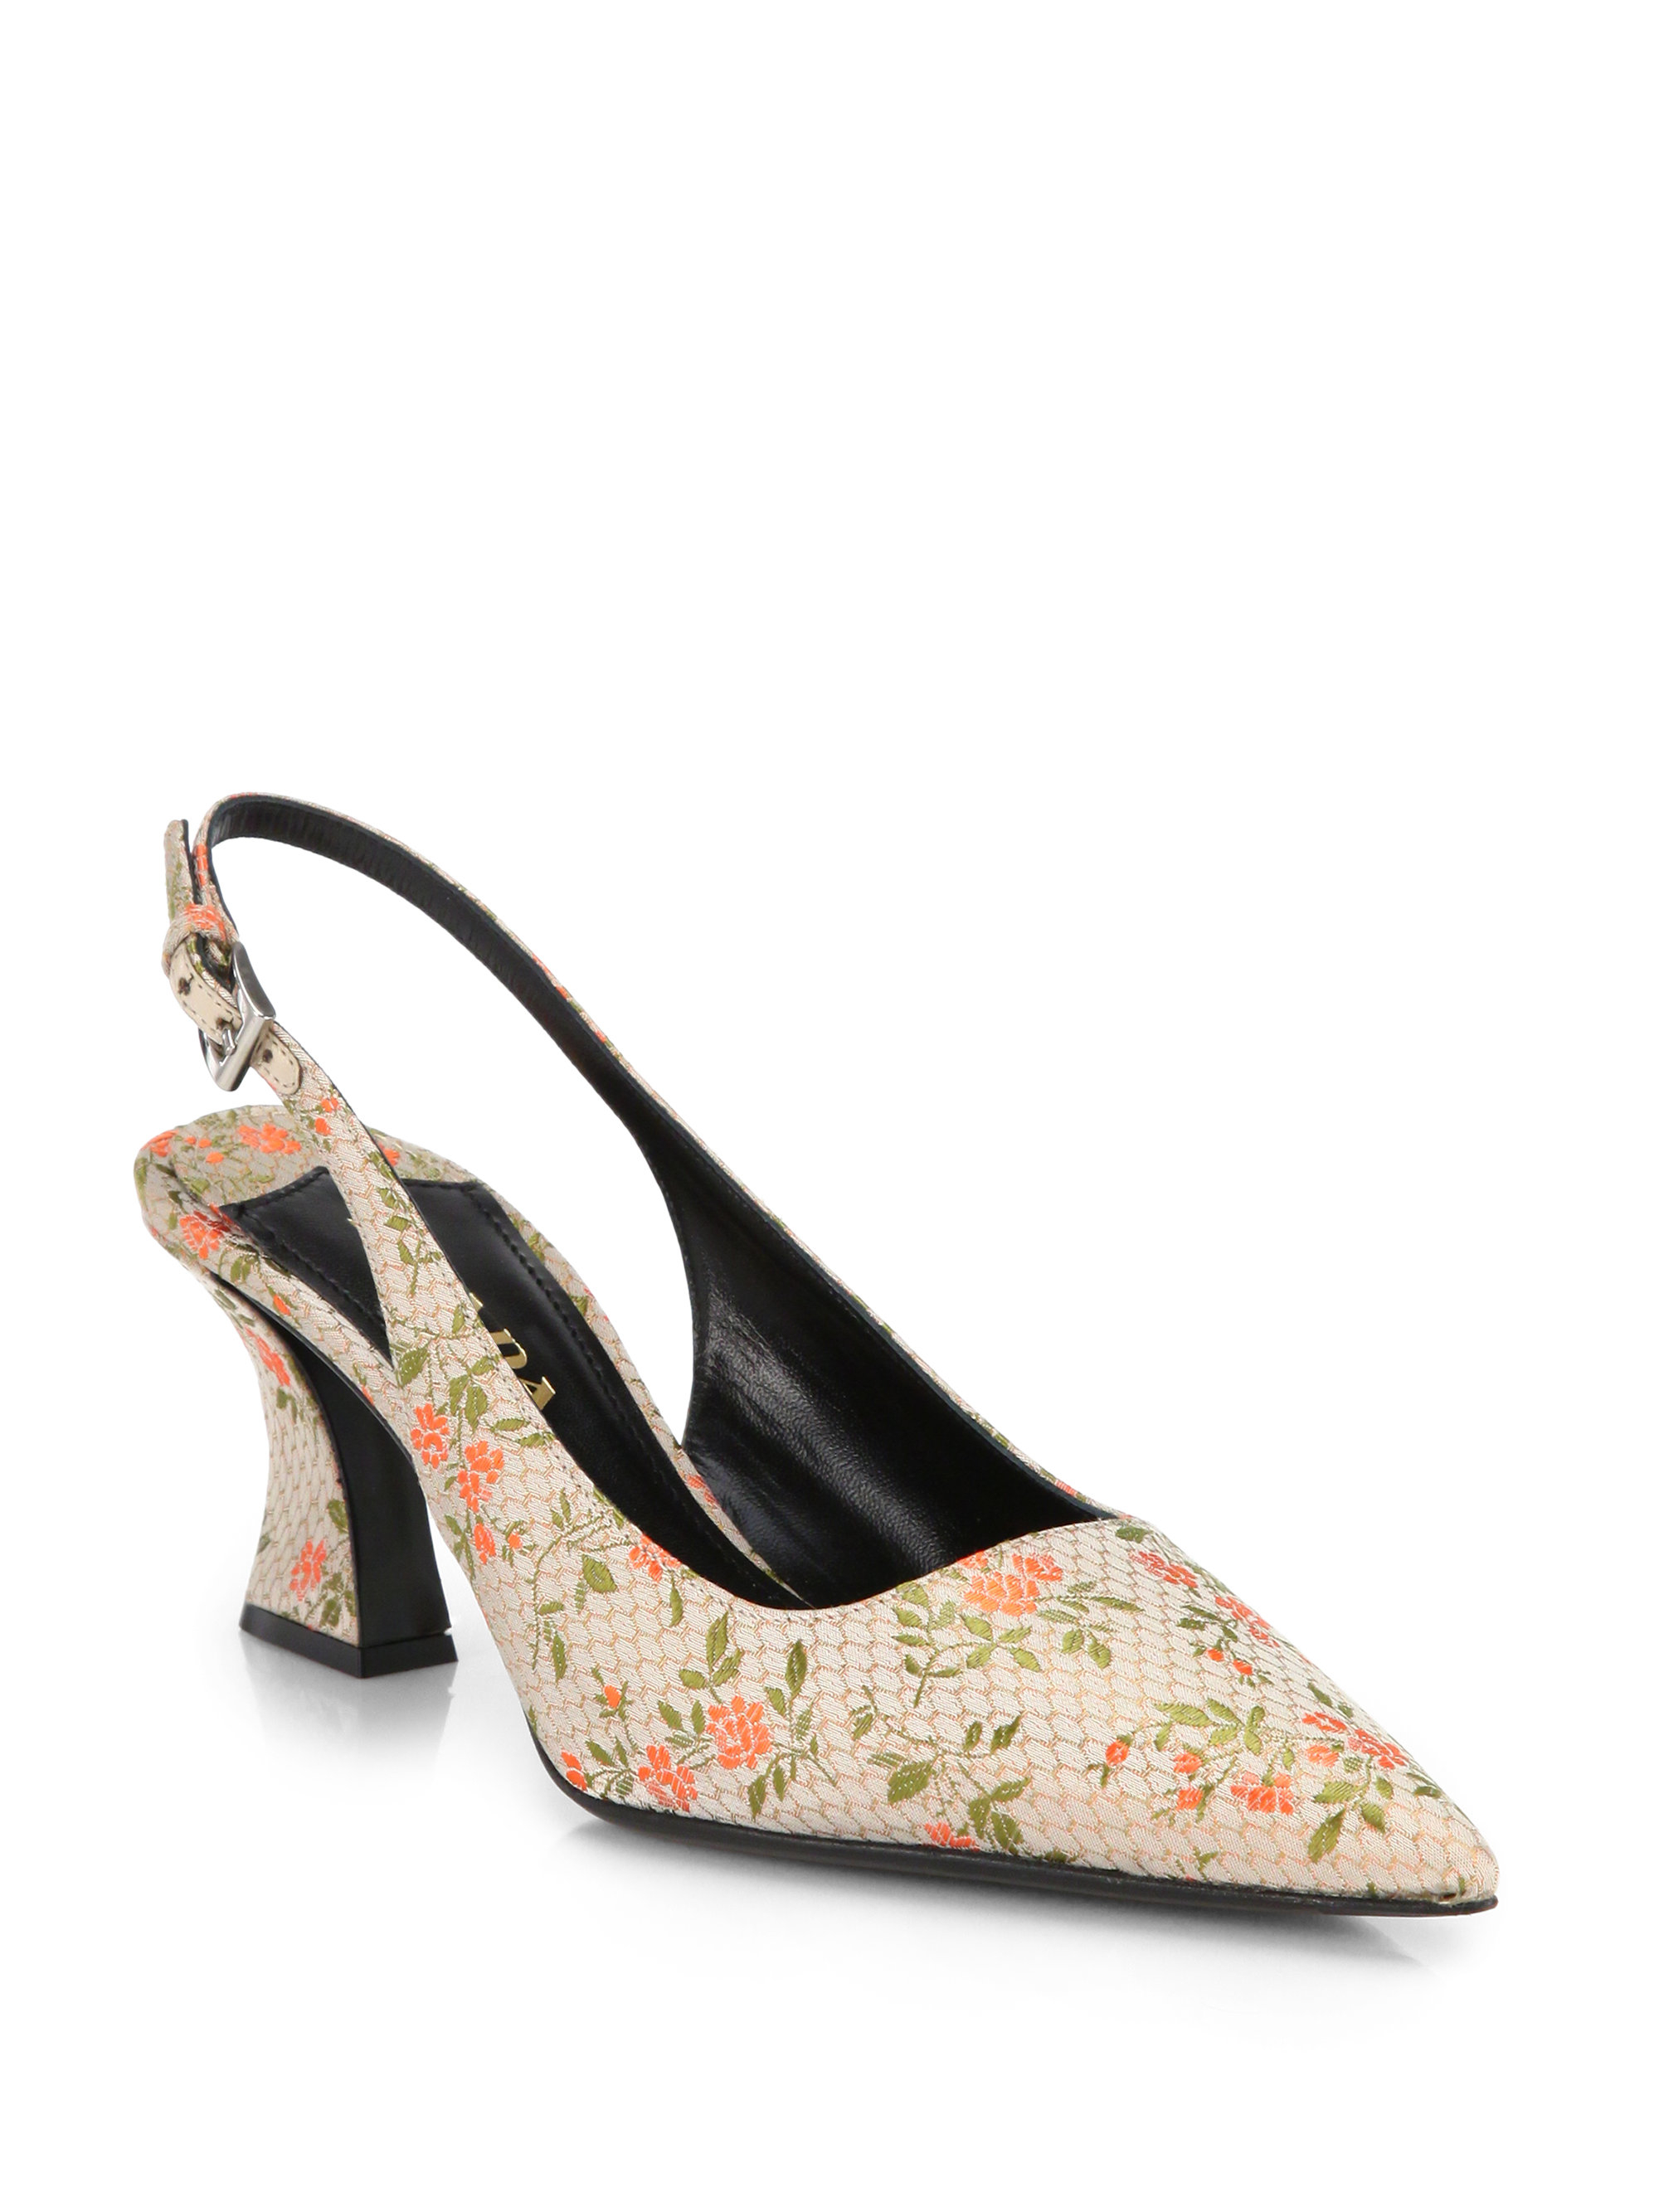 prada floral shoes